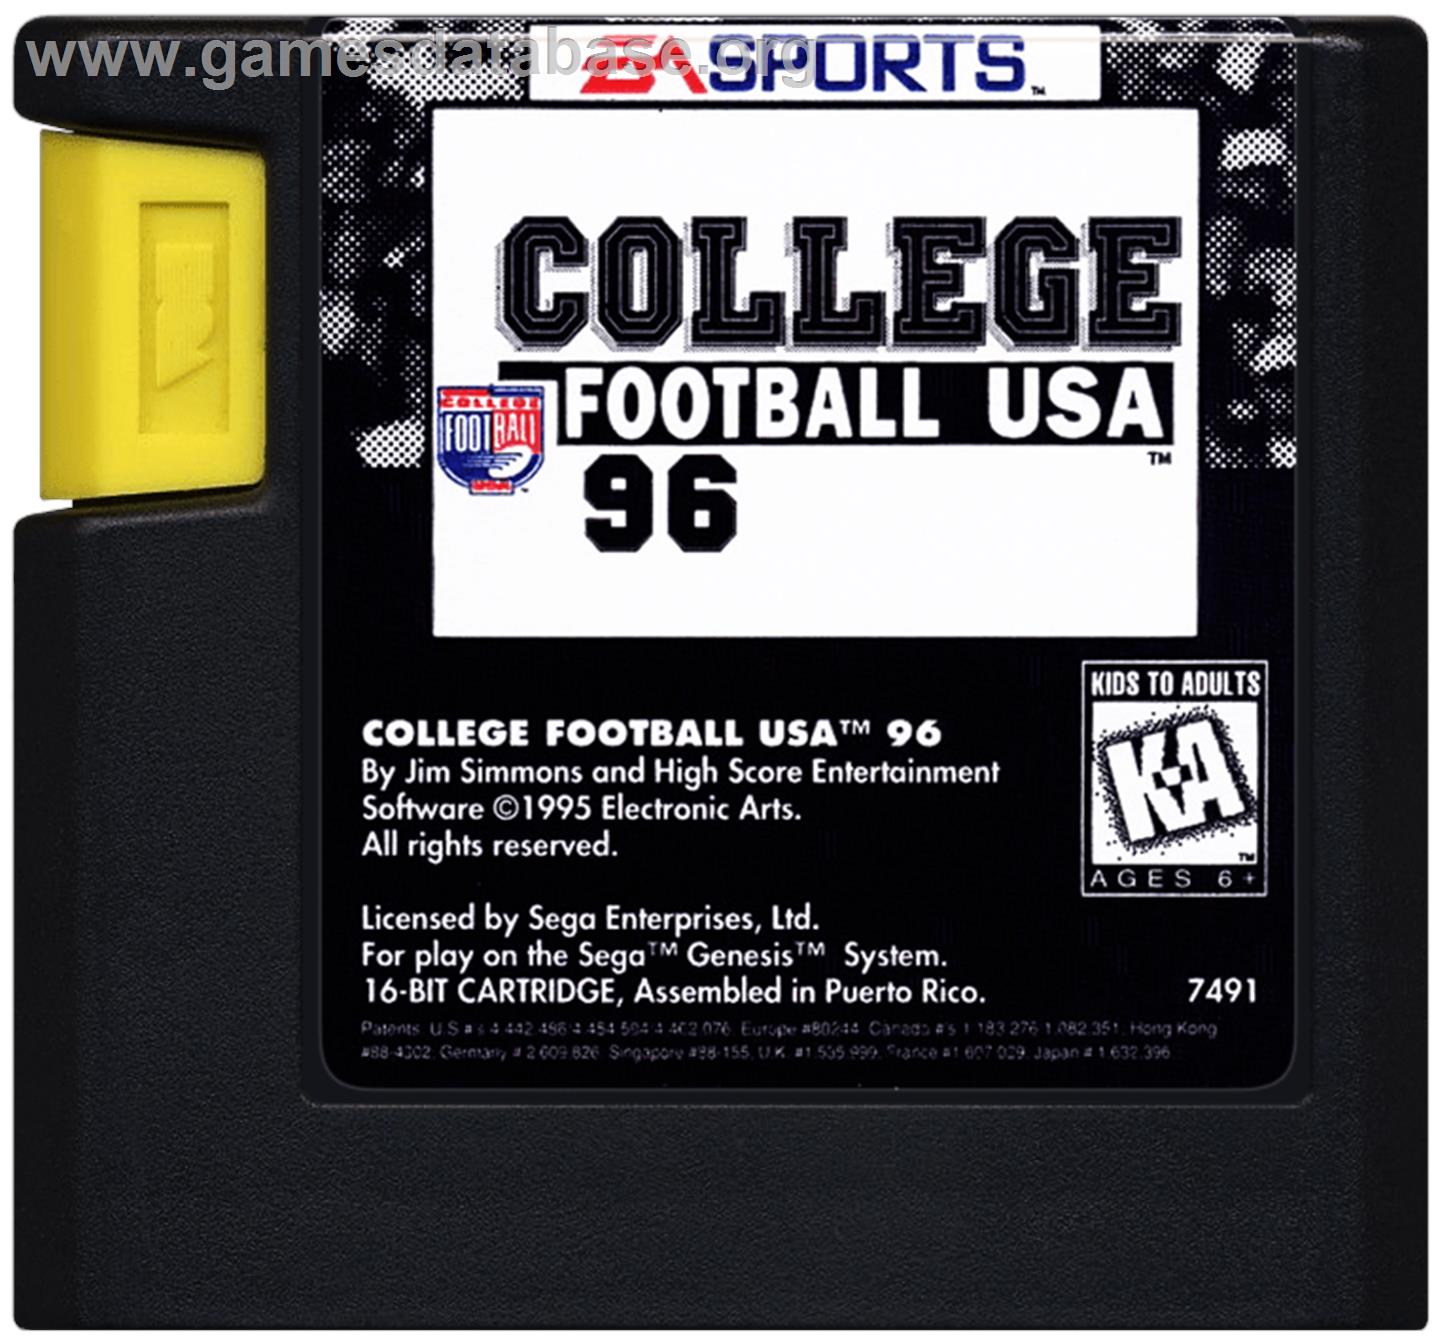 College Football USA 96 - Sega Genesis - Artwork - Cartridge